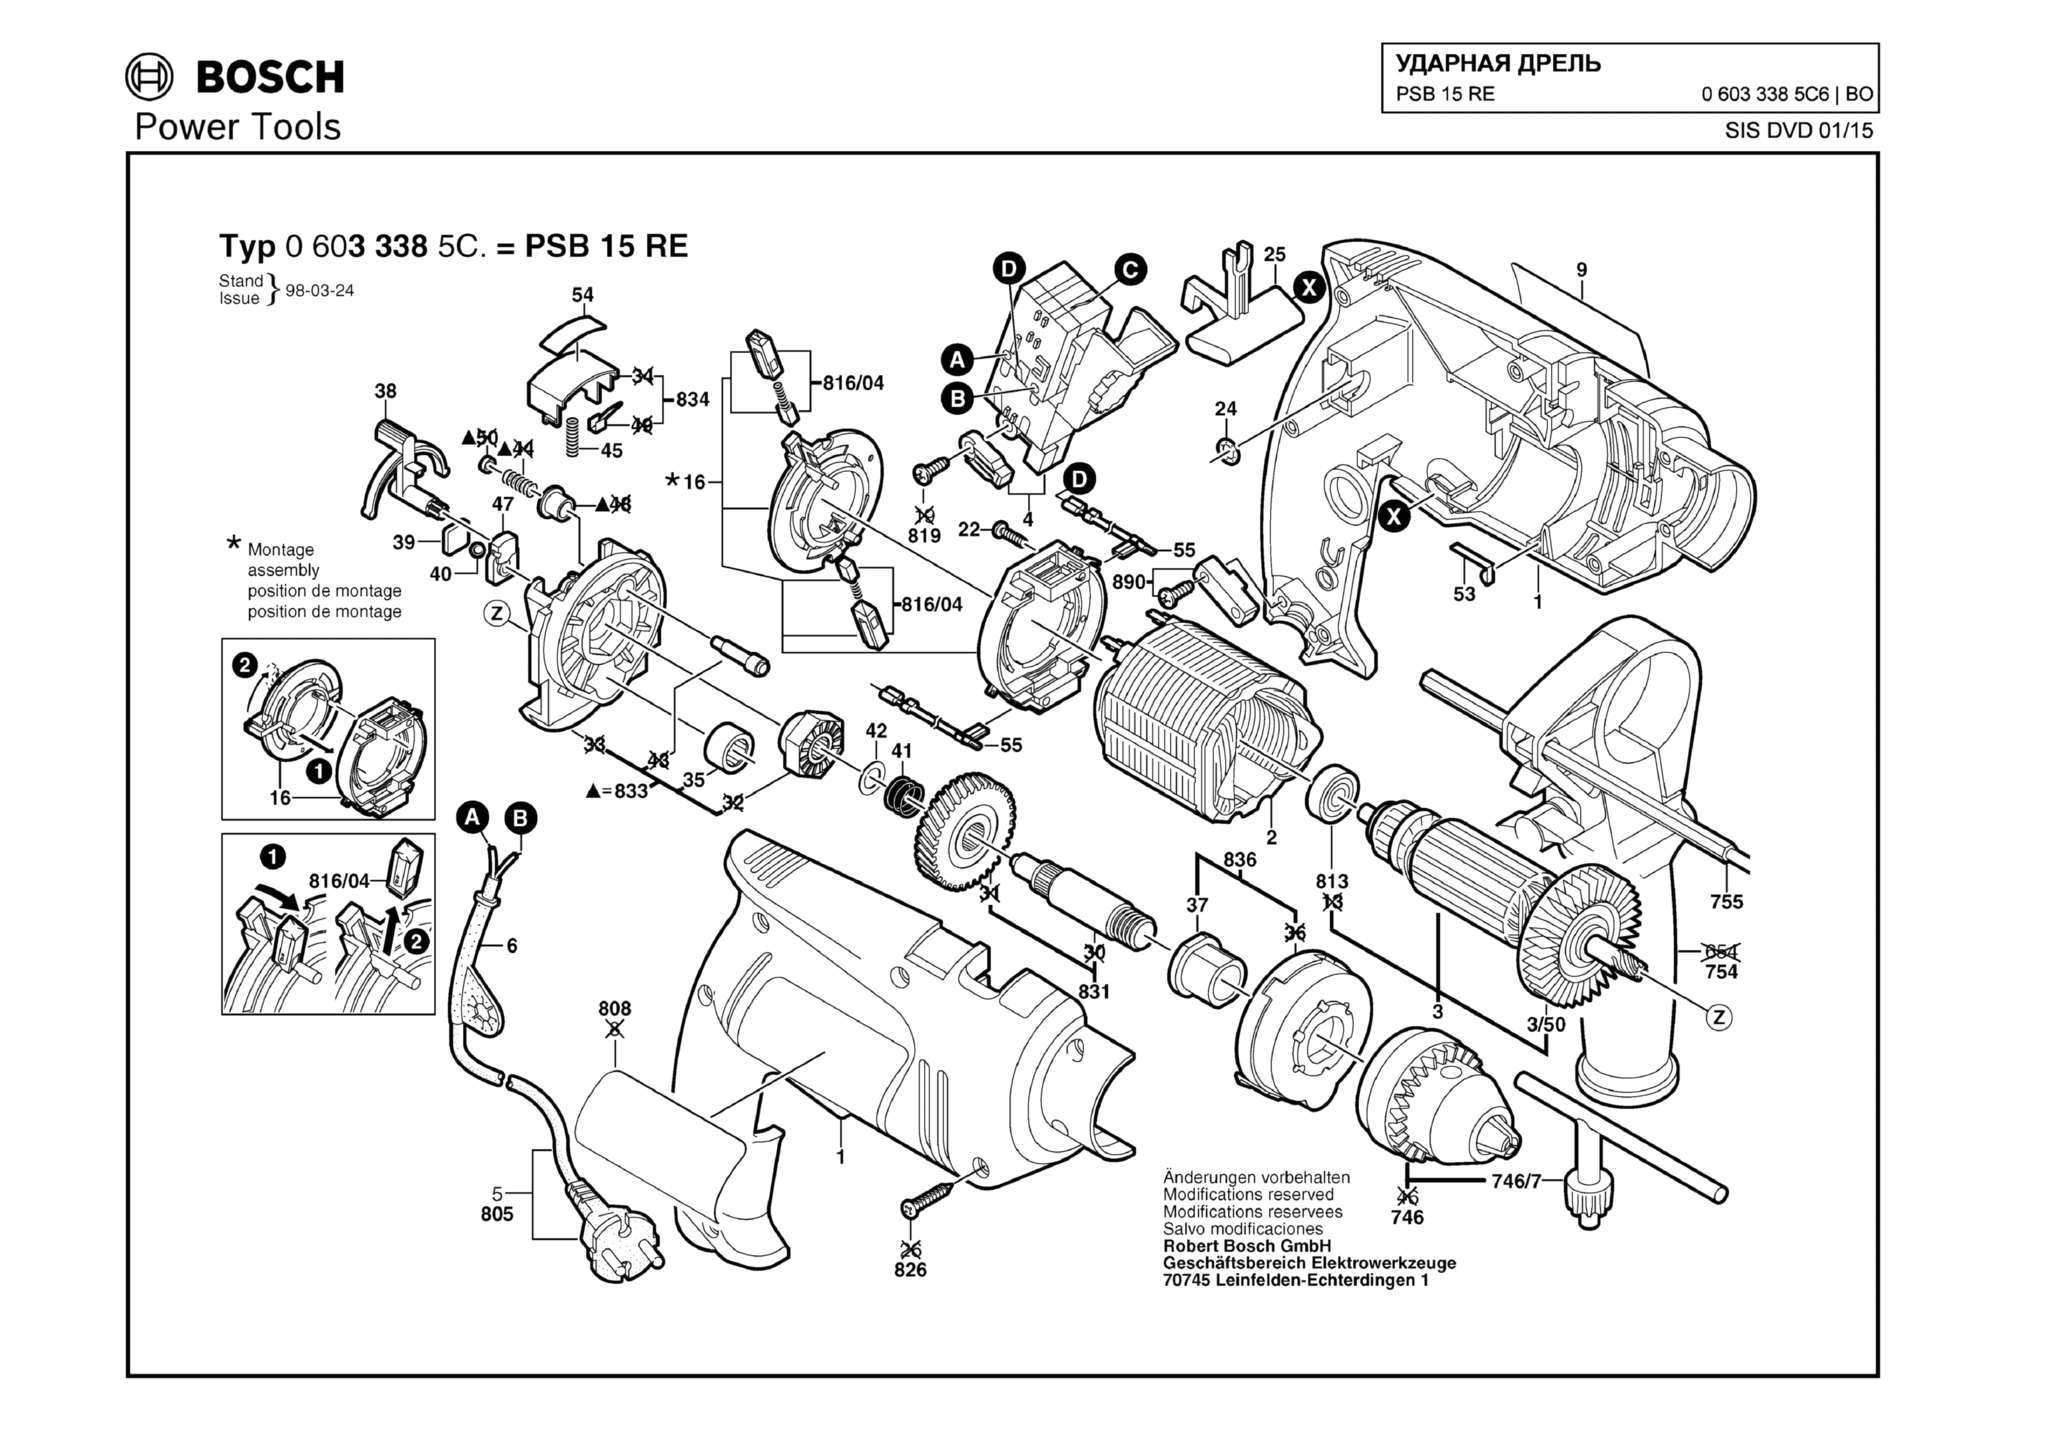 Запчасти, схема и деталировка Bosch PSB 15 RE (ТИП 06033385C6)